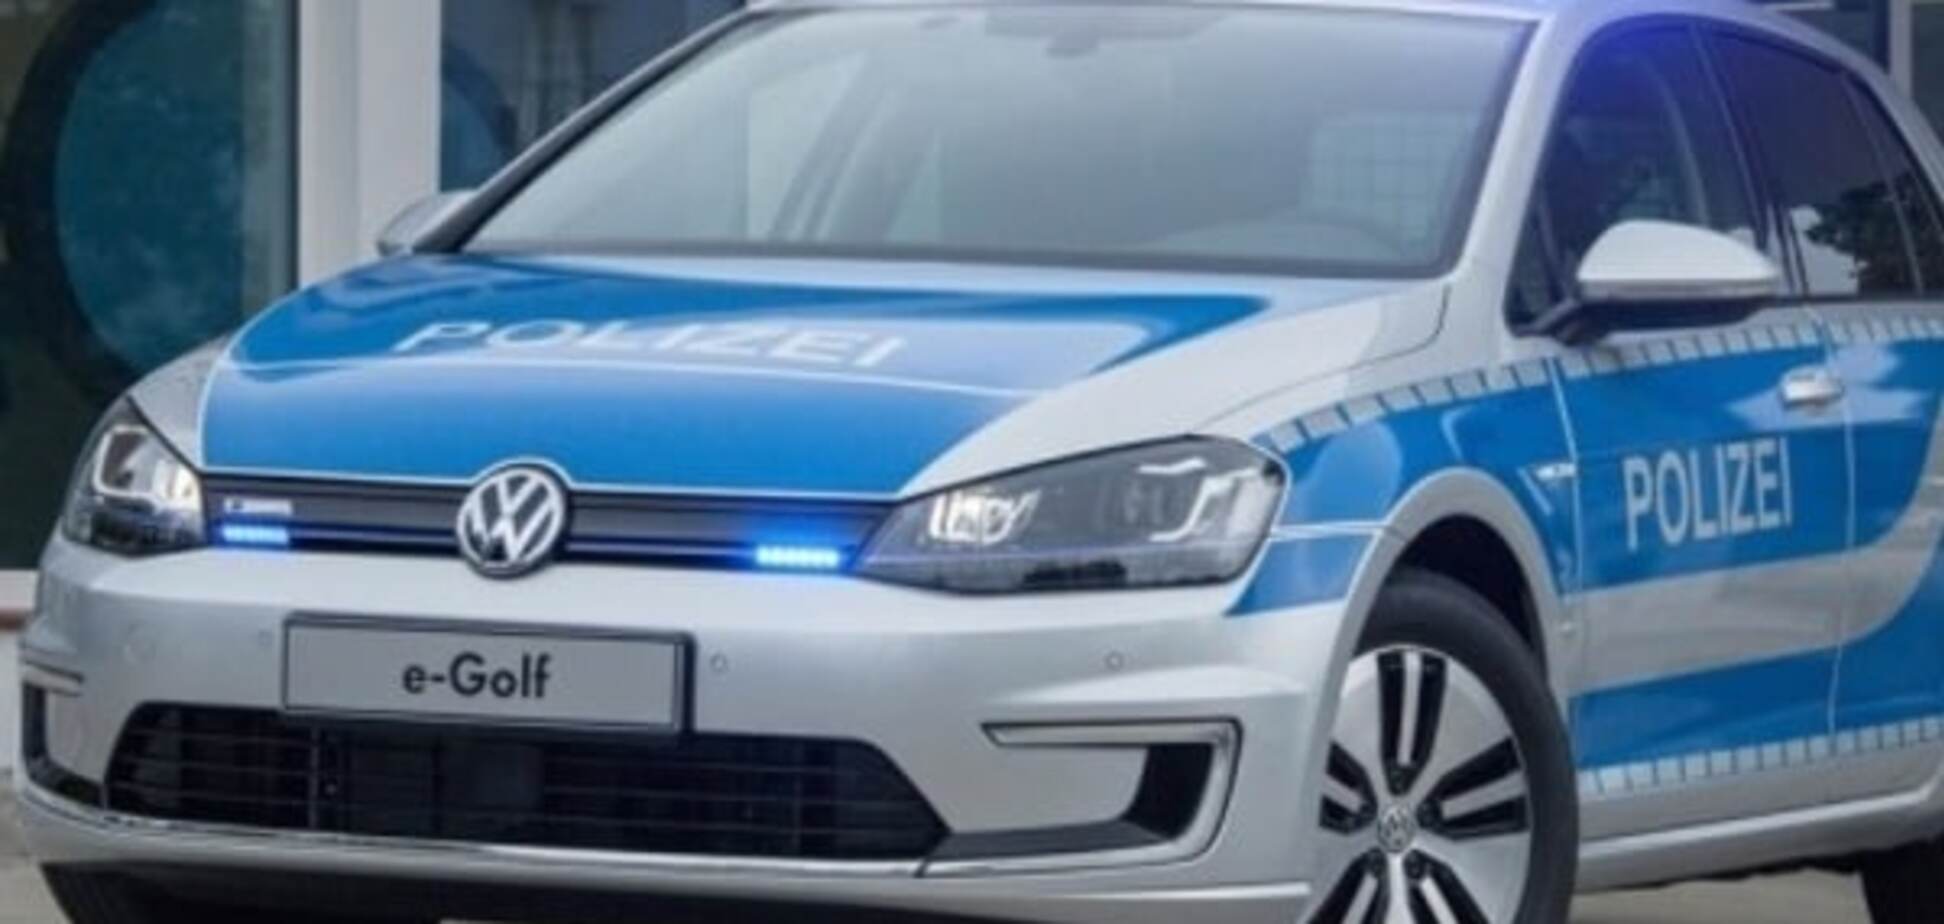 Полицейский электромобиль Volkswagen e-Golf